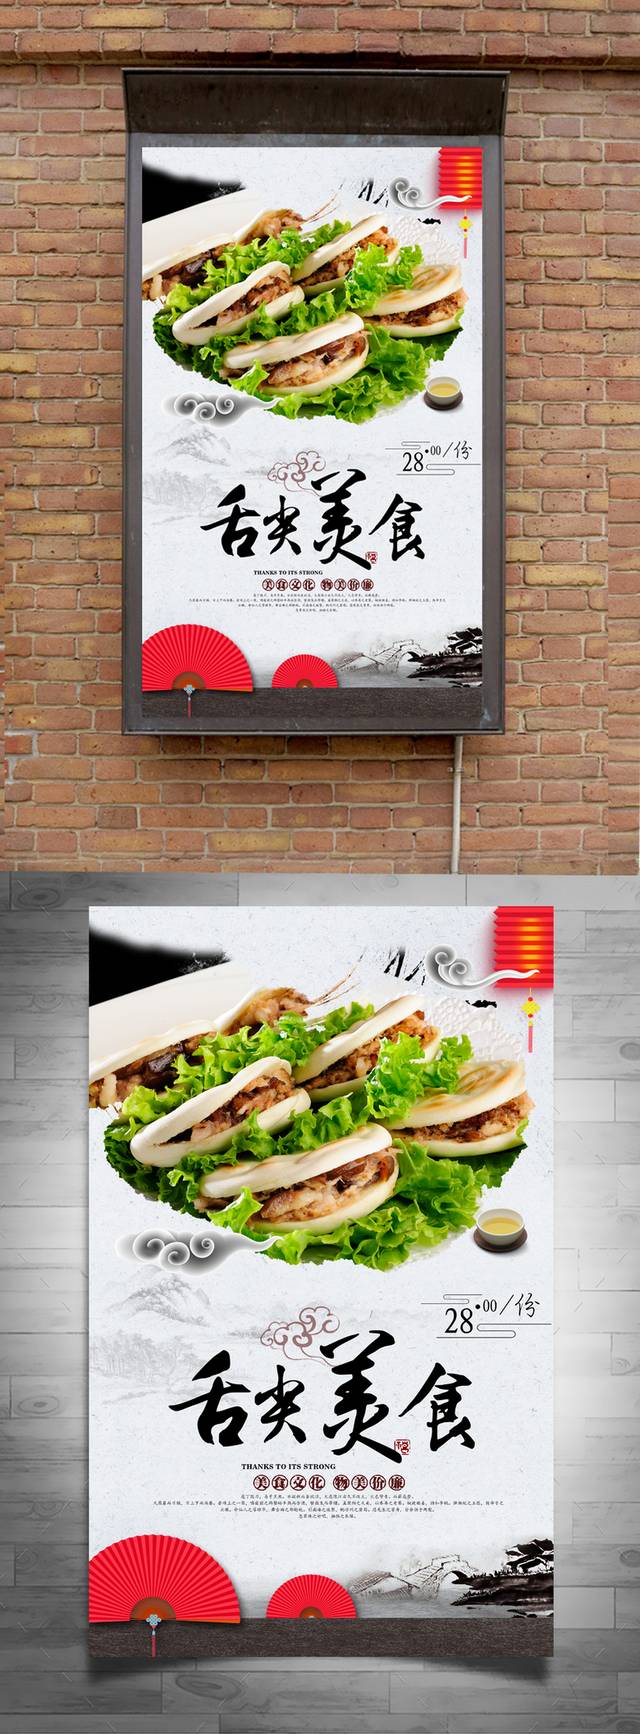 肉夹馍美食促销海报设计